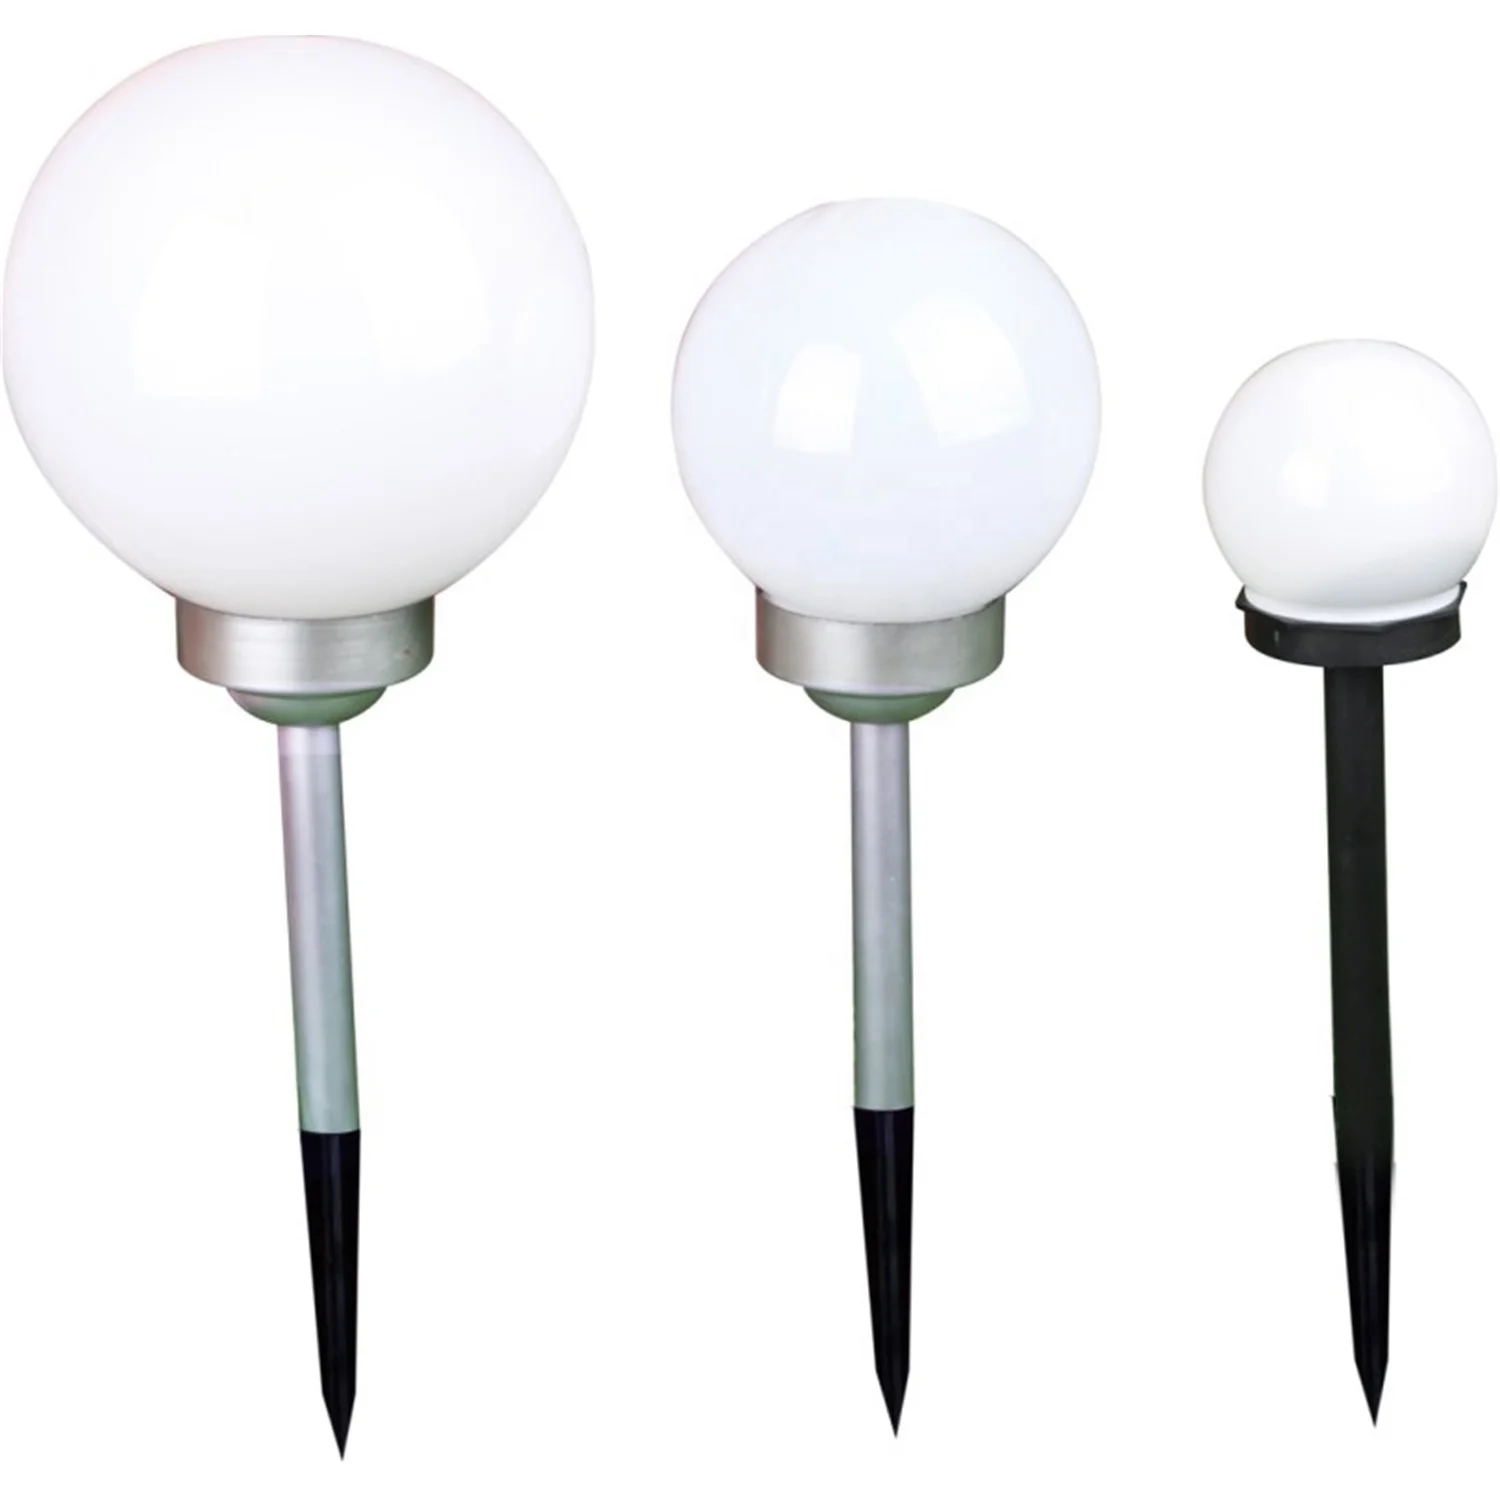 LED solar landscape Lighting Solar Garden Pathway Ball Solar LED Lamp Diameter 10/15/20cm